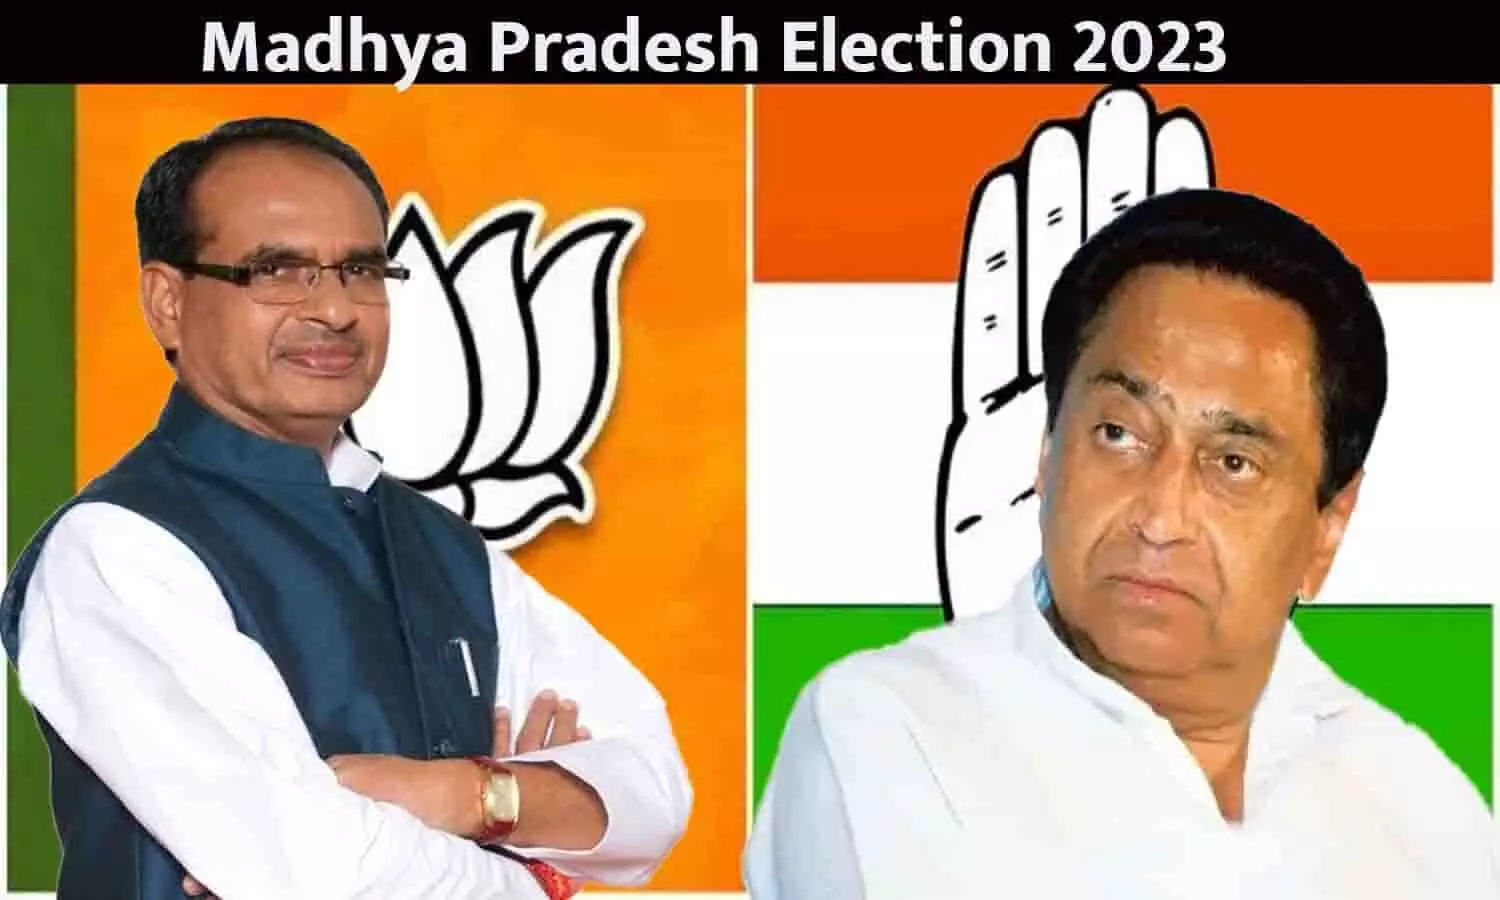 मध्य प्रदेश में भाजपा या कांग्रेस में कौन जीतेगा विधानसभा चुनाव 2023